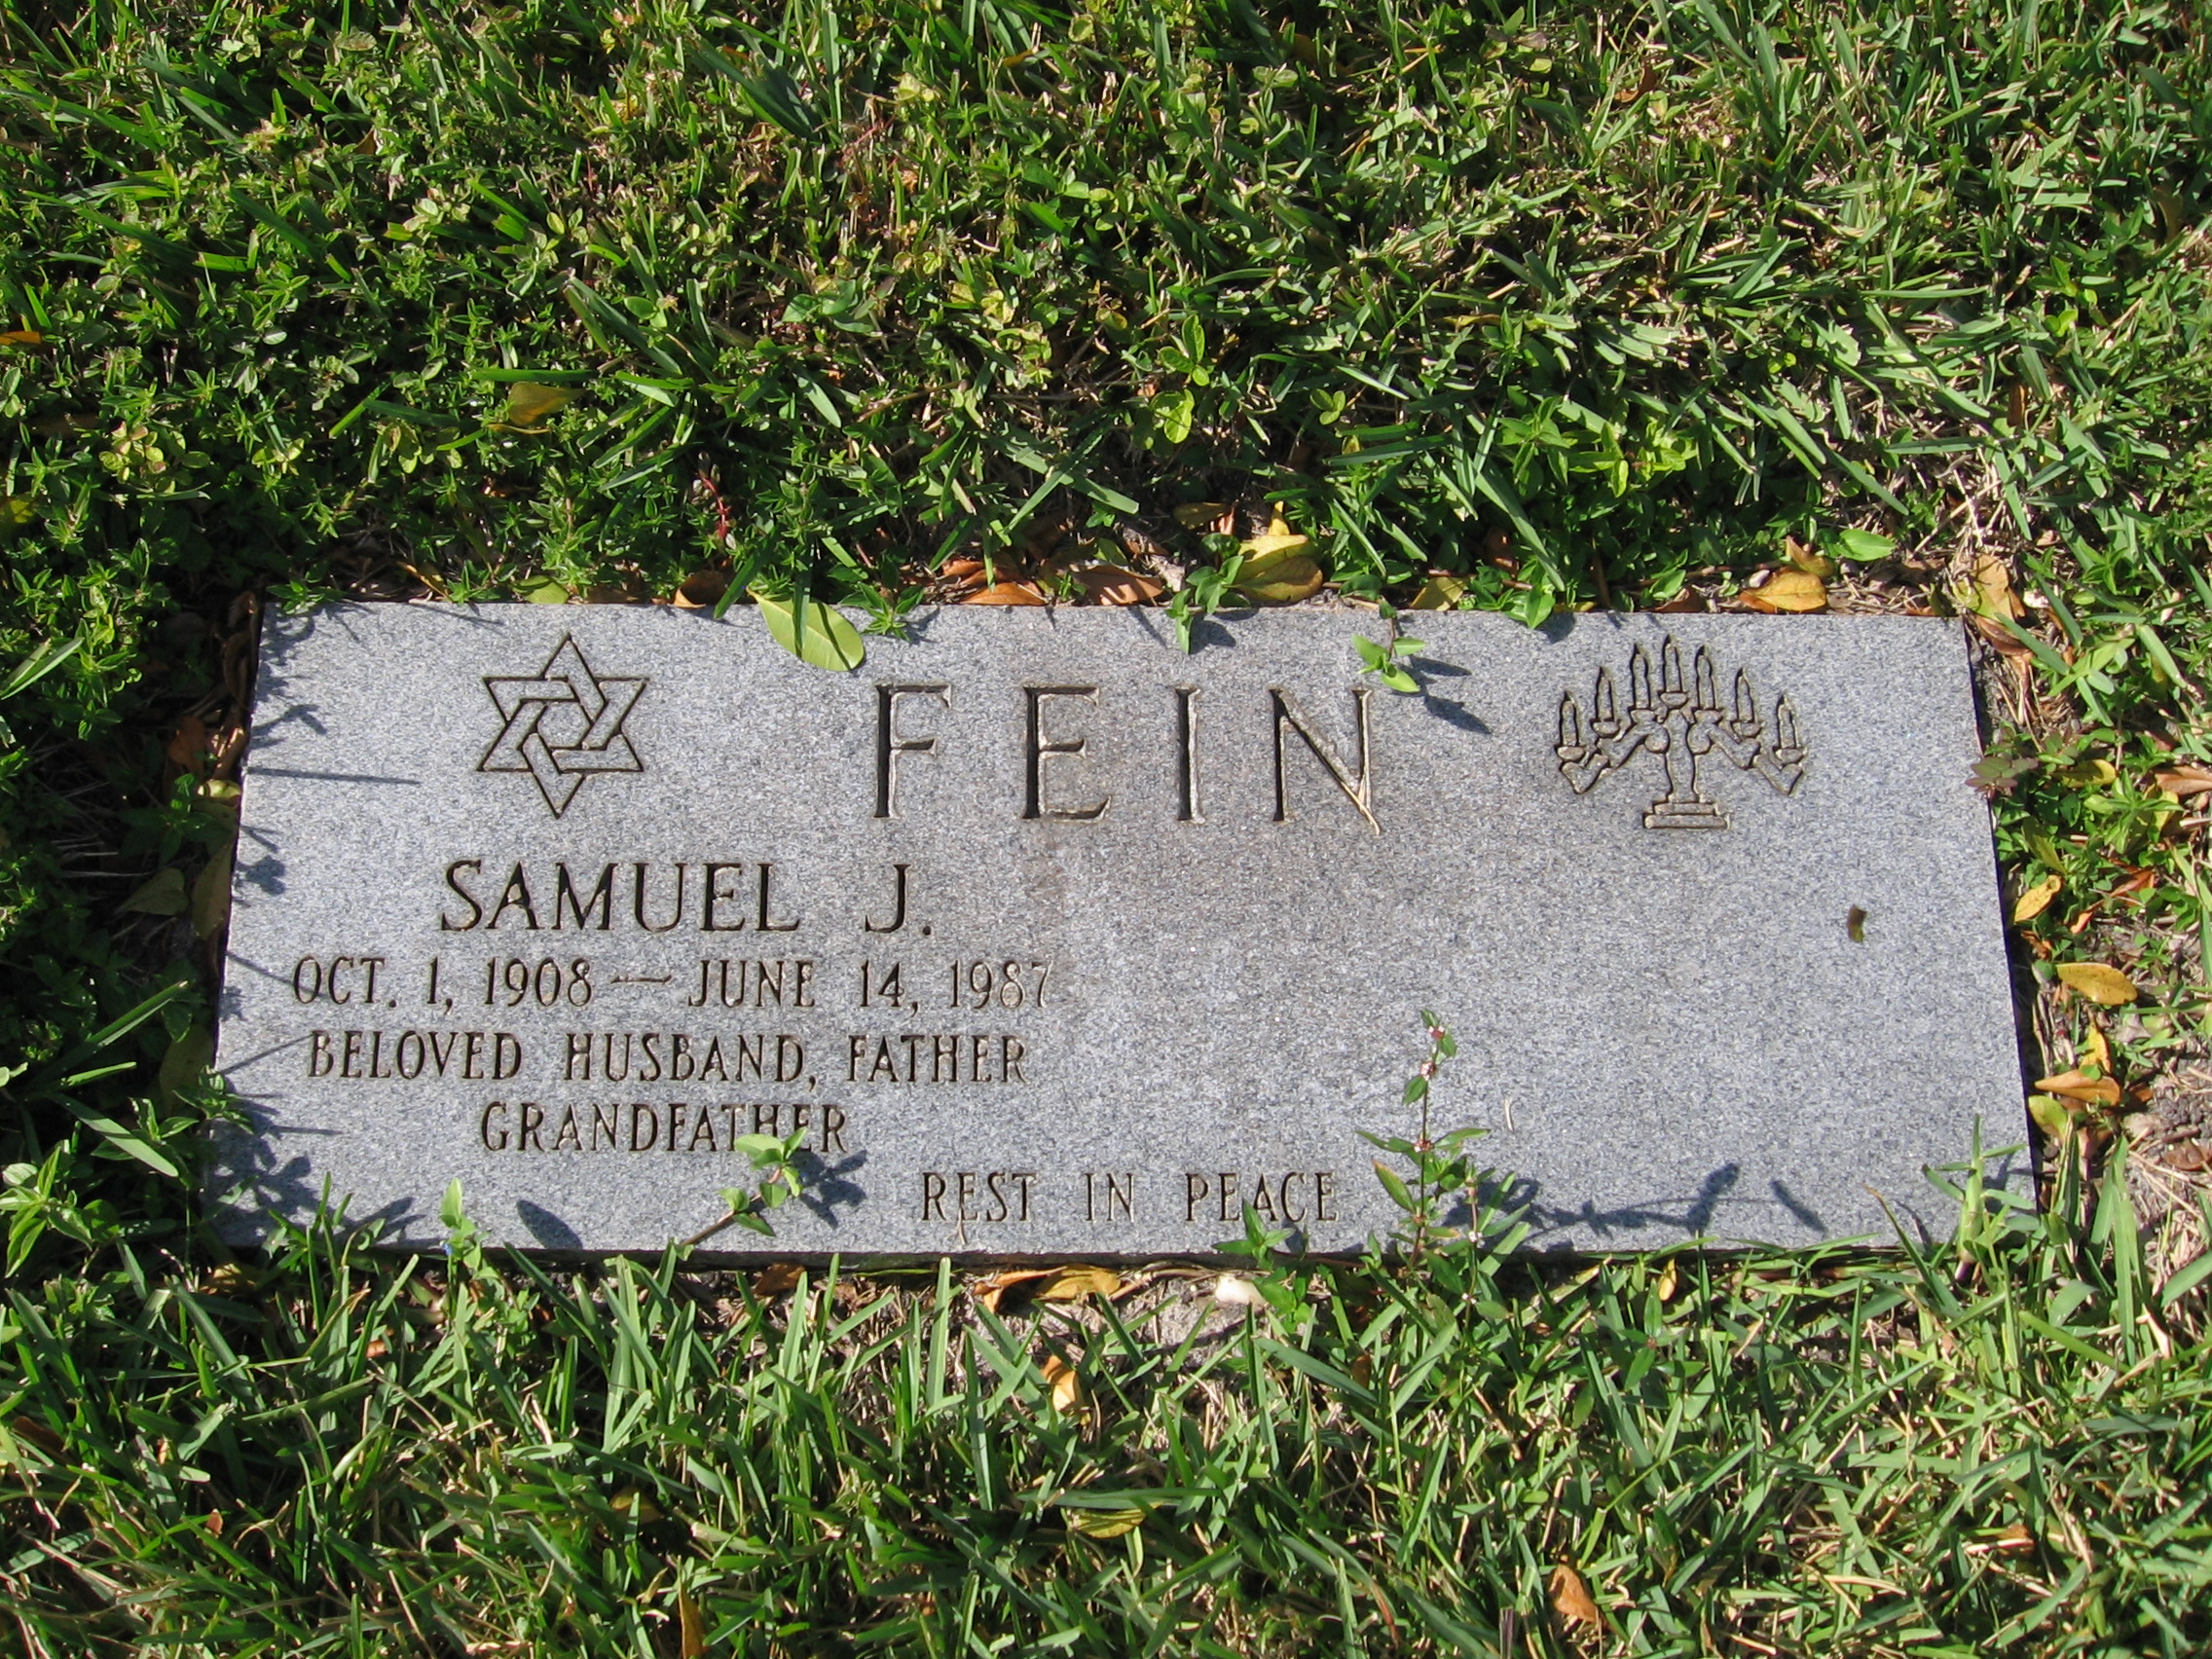 Samuel J Fein